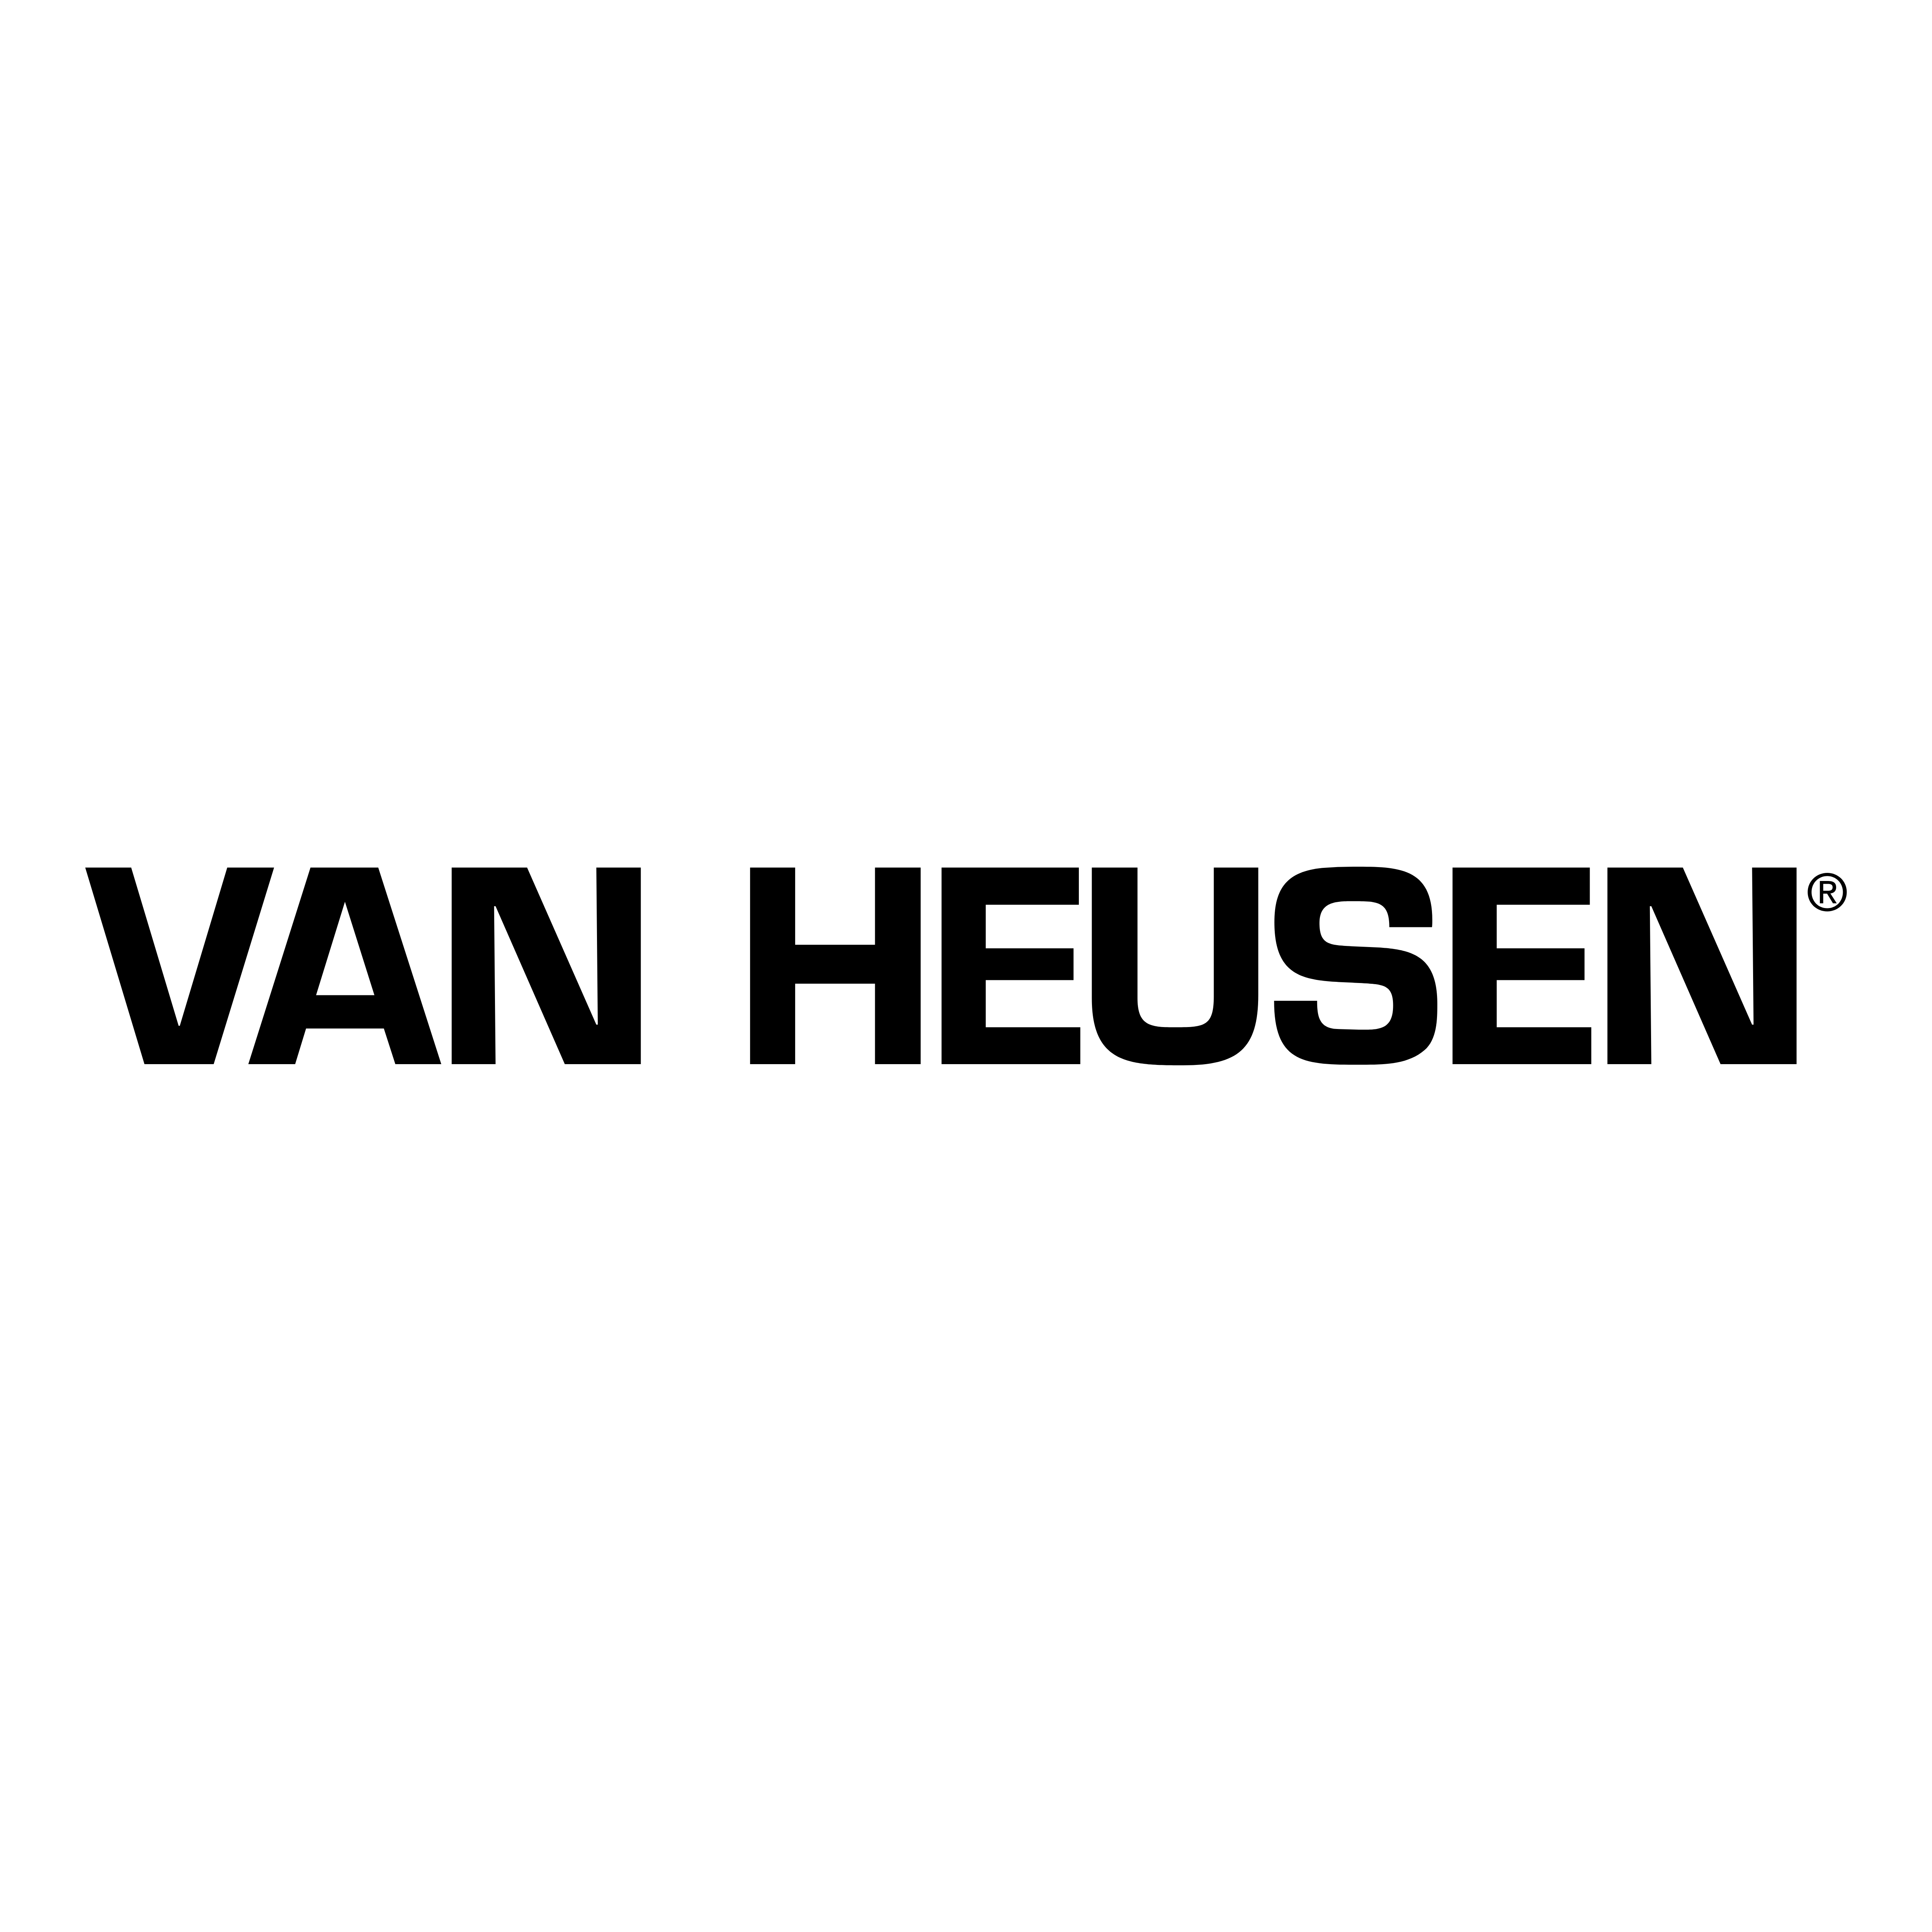 Van Heusen Logo - Van Heusen – Logos Download